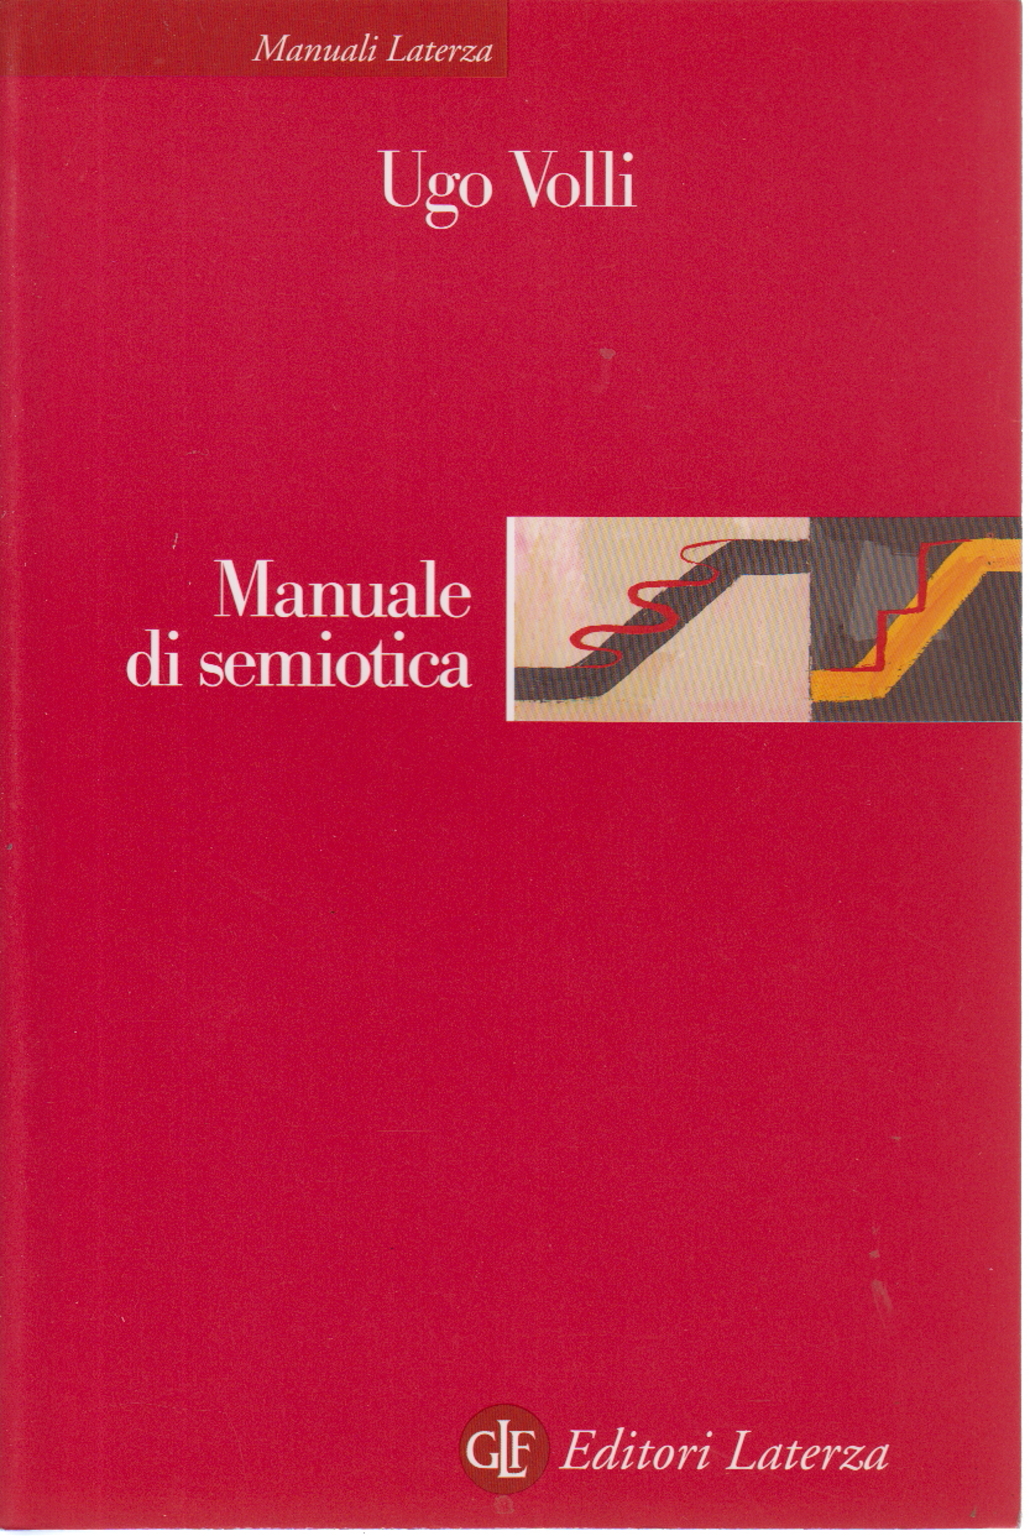 Manuale di semiotica, Ugo Volli